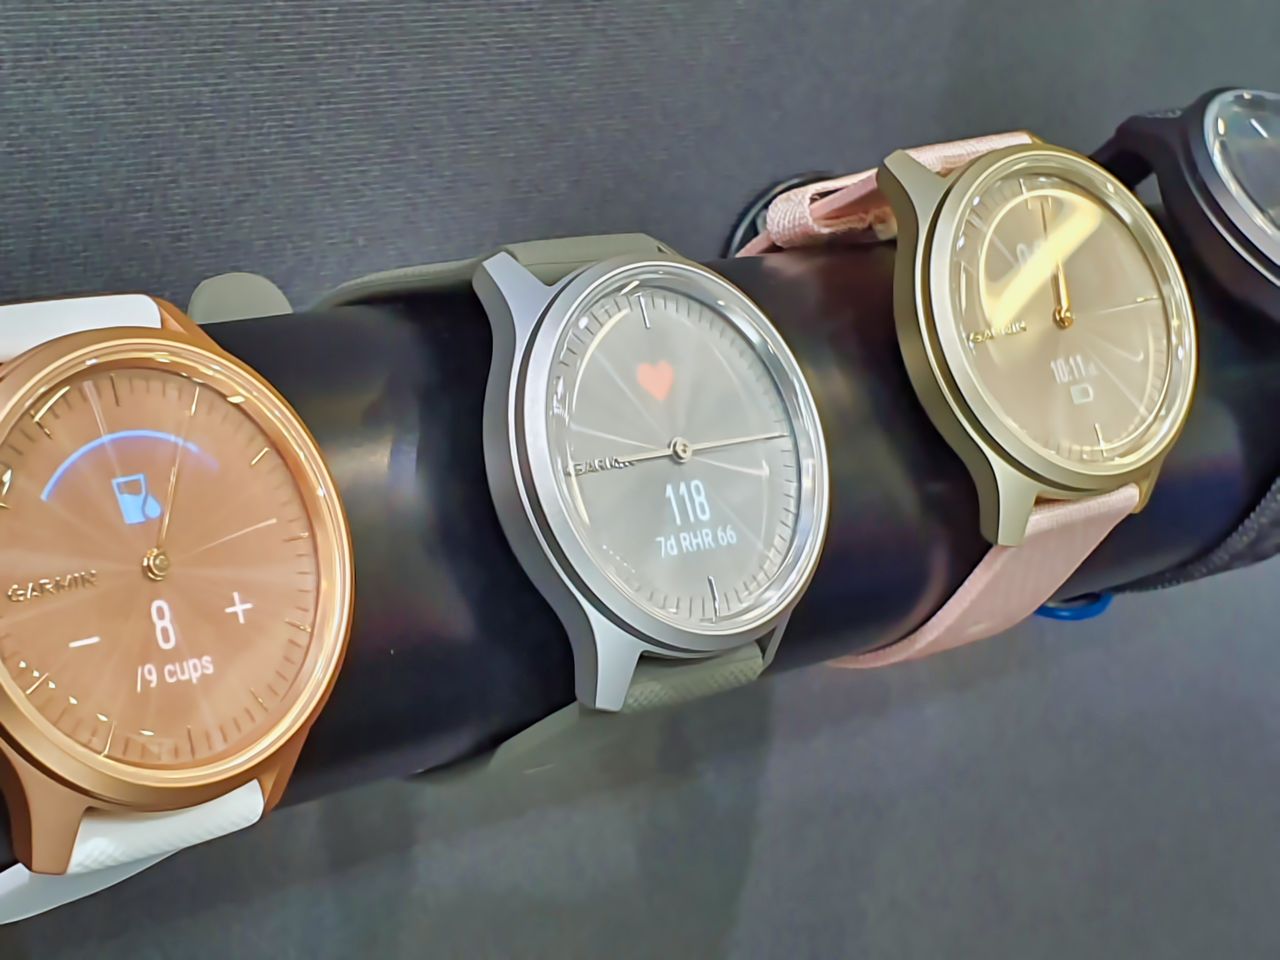 Na IFA 2019 znalazłem dla siebie wymarzony zegarek. Garmin vivomove Style jest genialny (ale drogi)